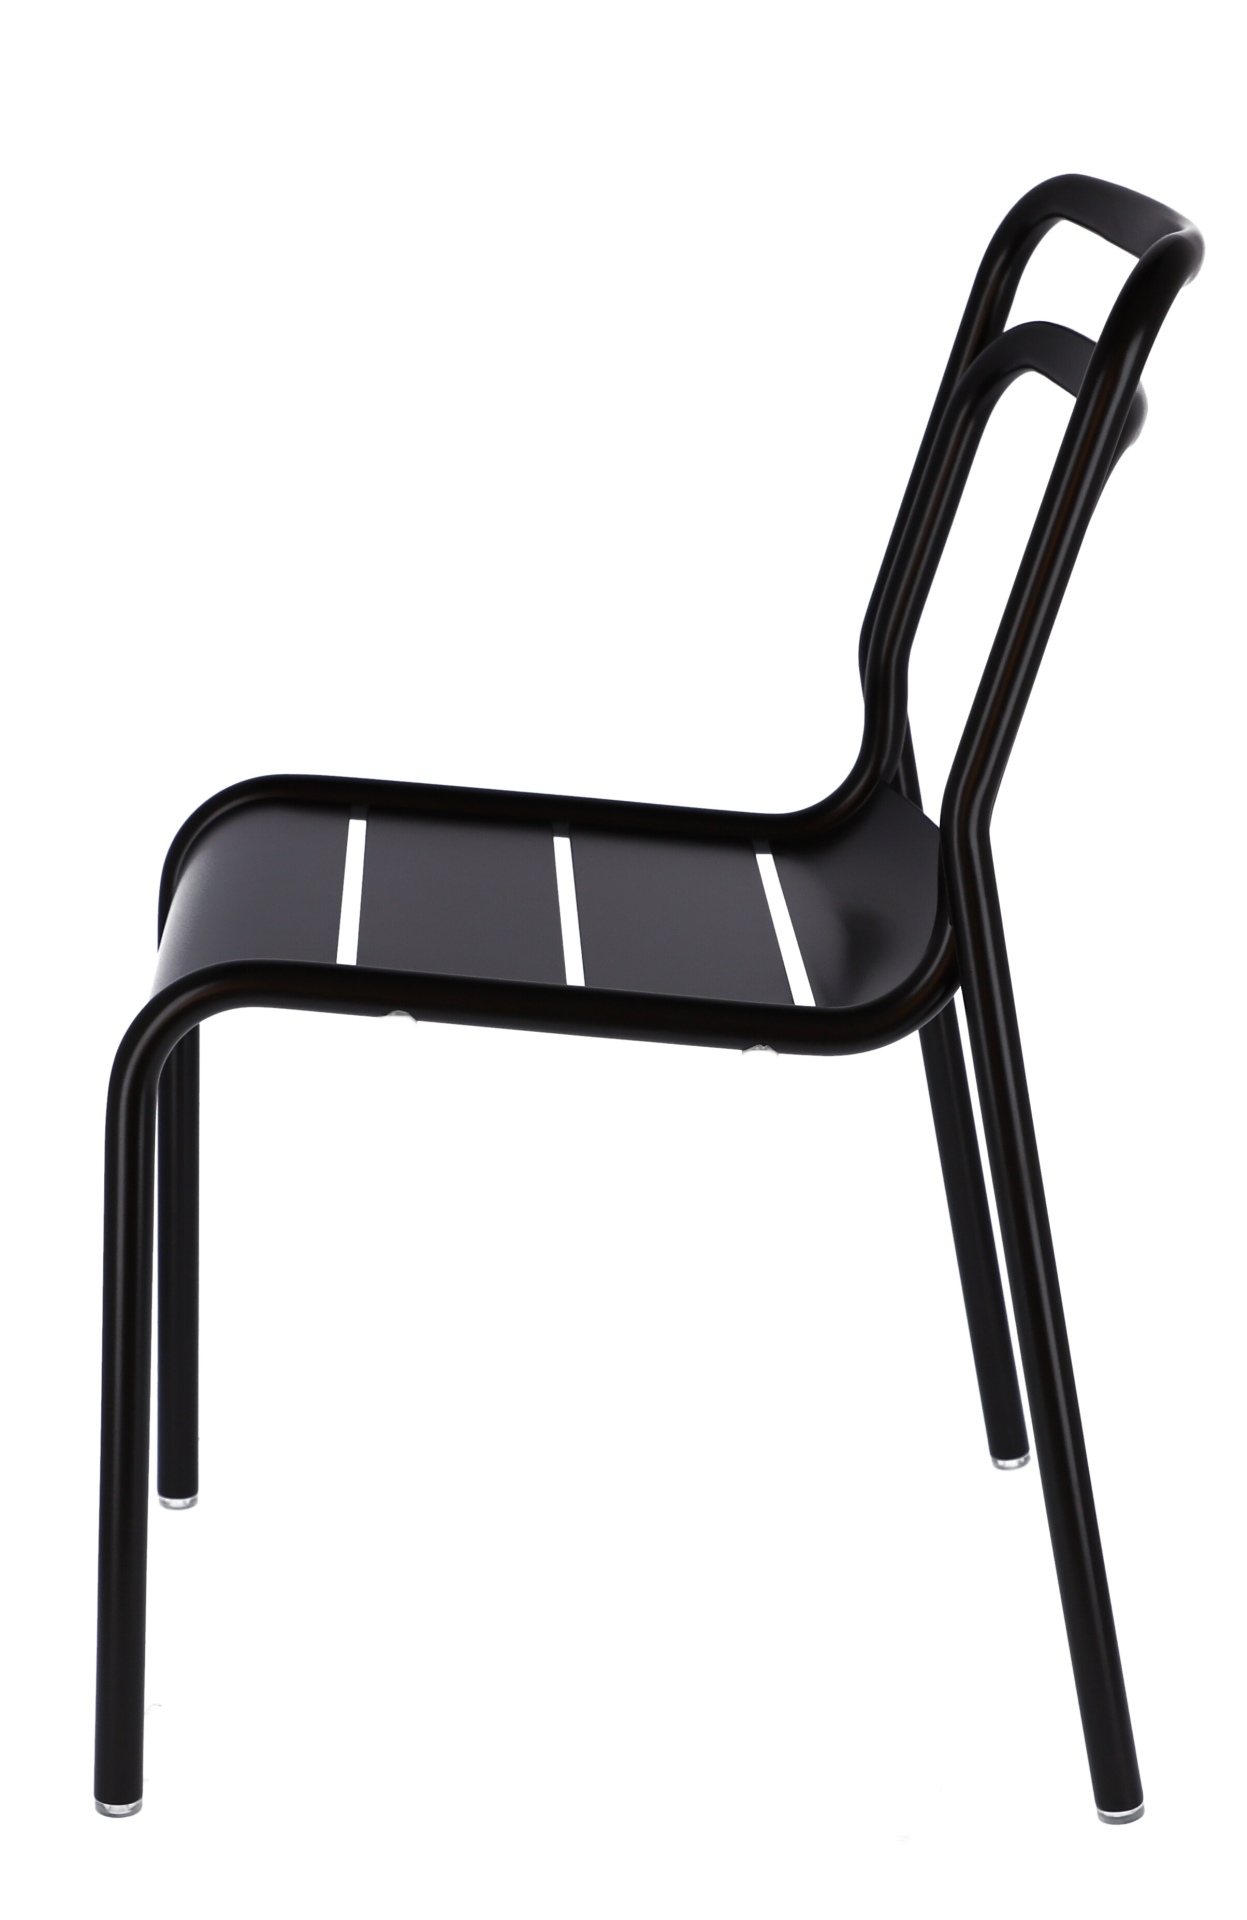 Der moderne Gartenstuhl Live wurde aus Aluminium hergestellt. Designet wurde er von der Marke Jan Kurtz. Die Farbe des Stuhls ist Schwarz.